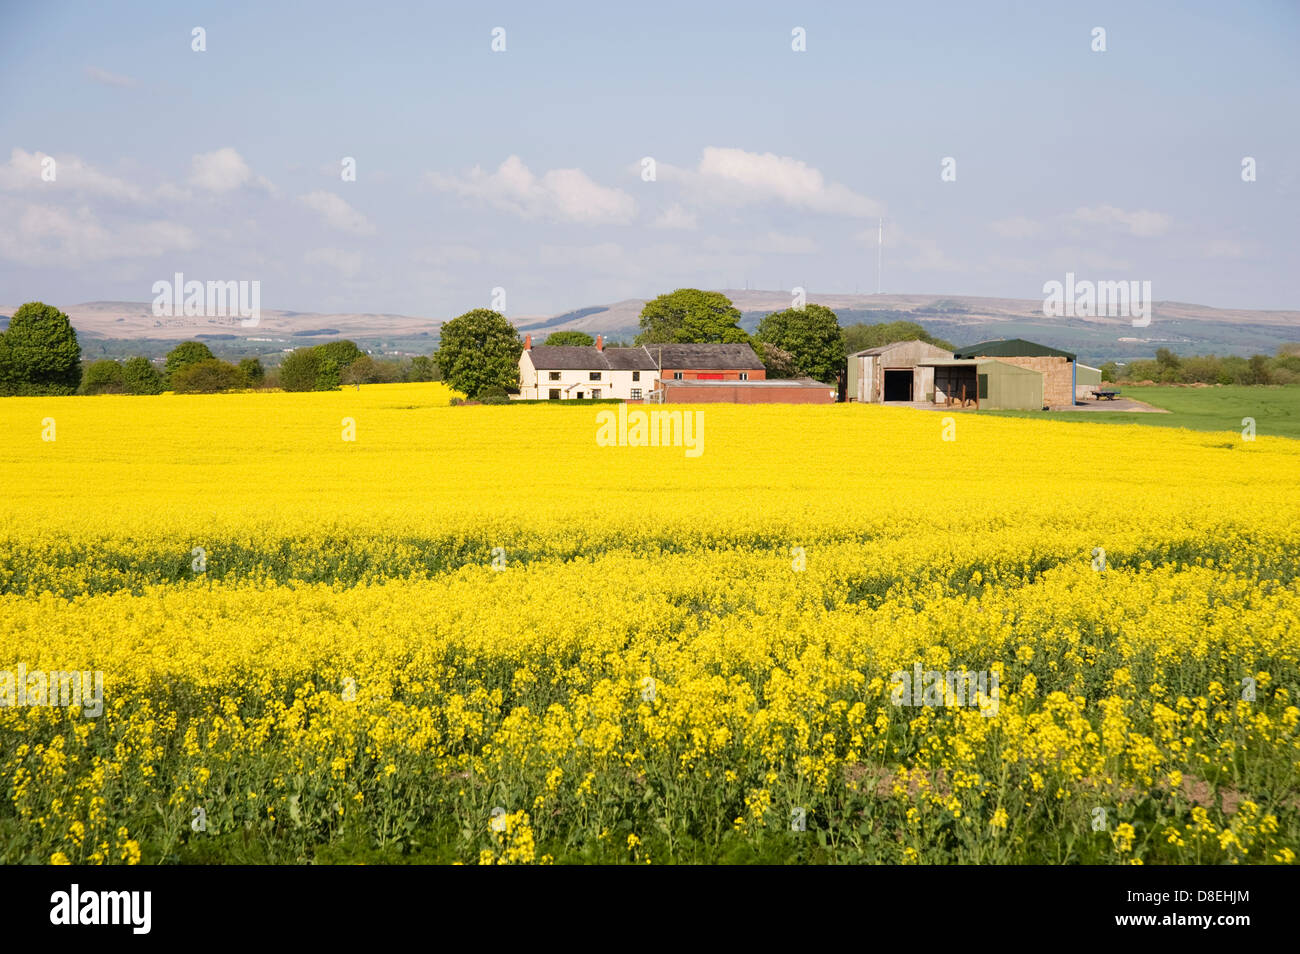 Eine Farm in einem Meer von gelben Raps Stockfoto